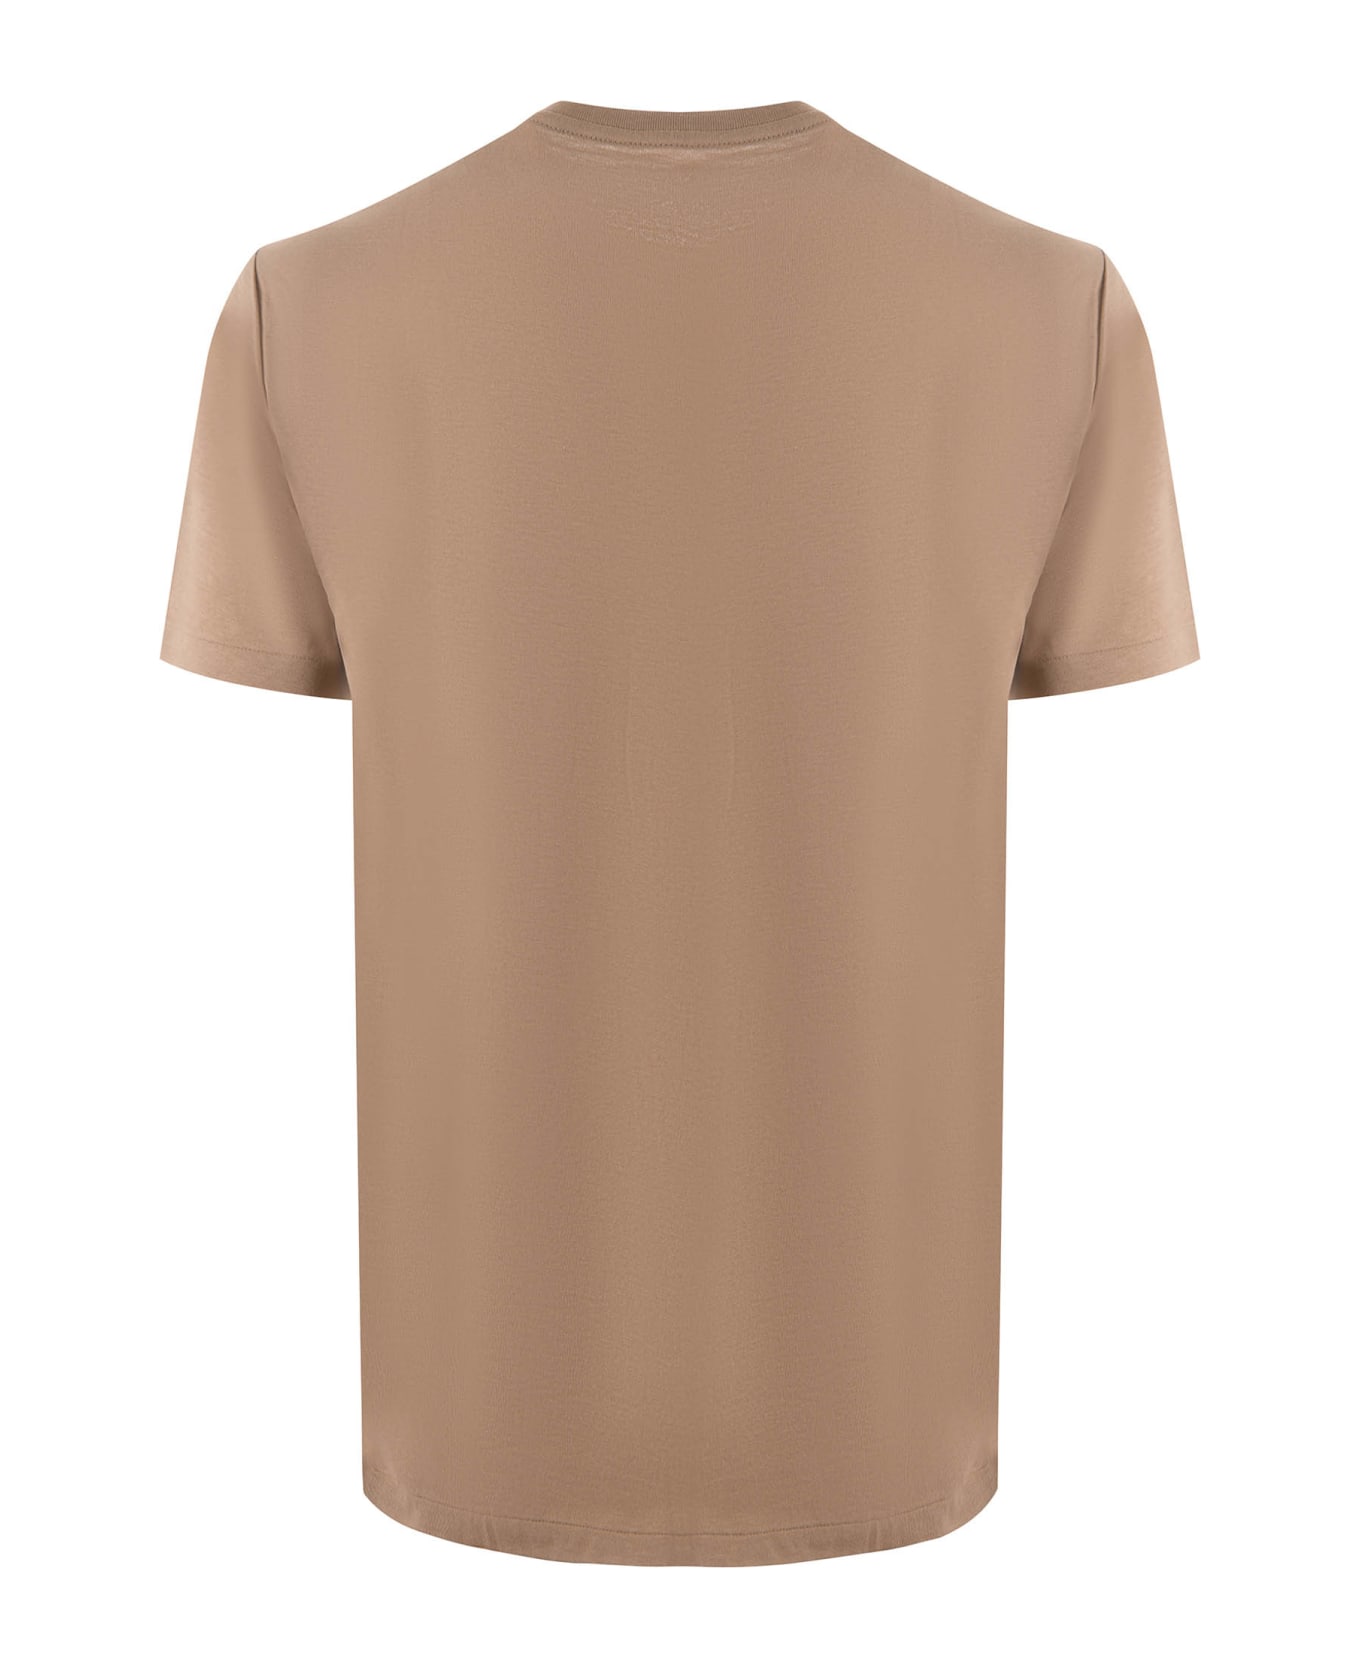 Polo Ralph Lauren T-shirt - Beige